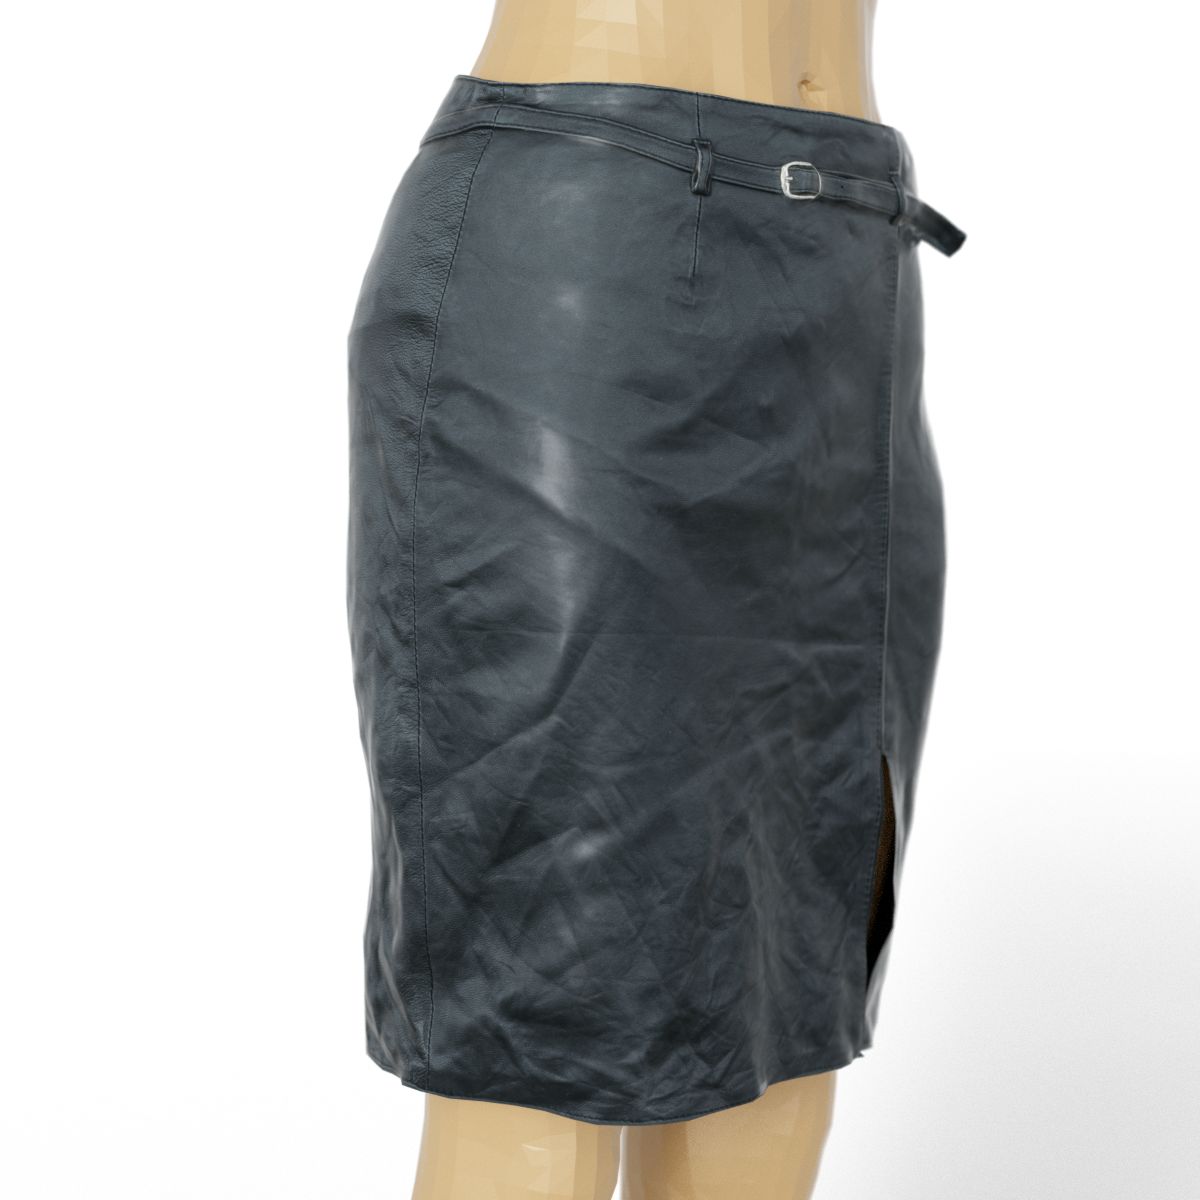 Vintage Skirt Black Leather